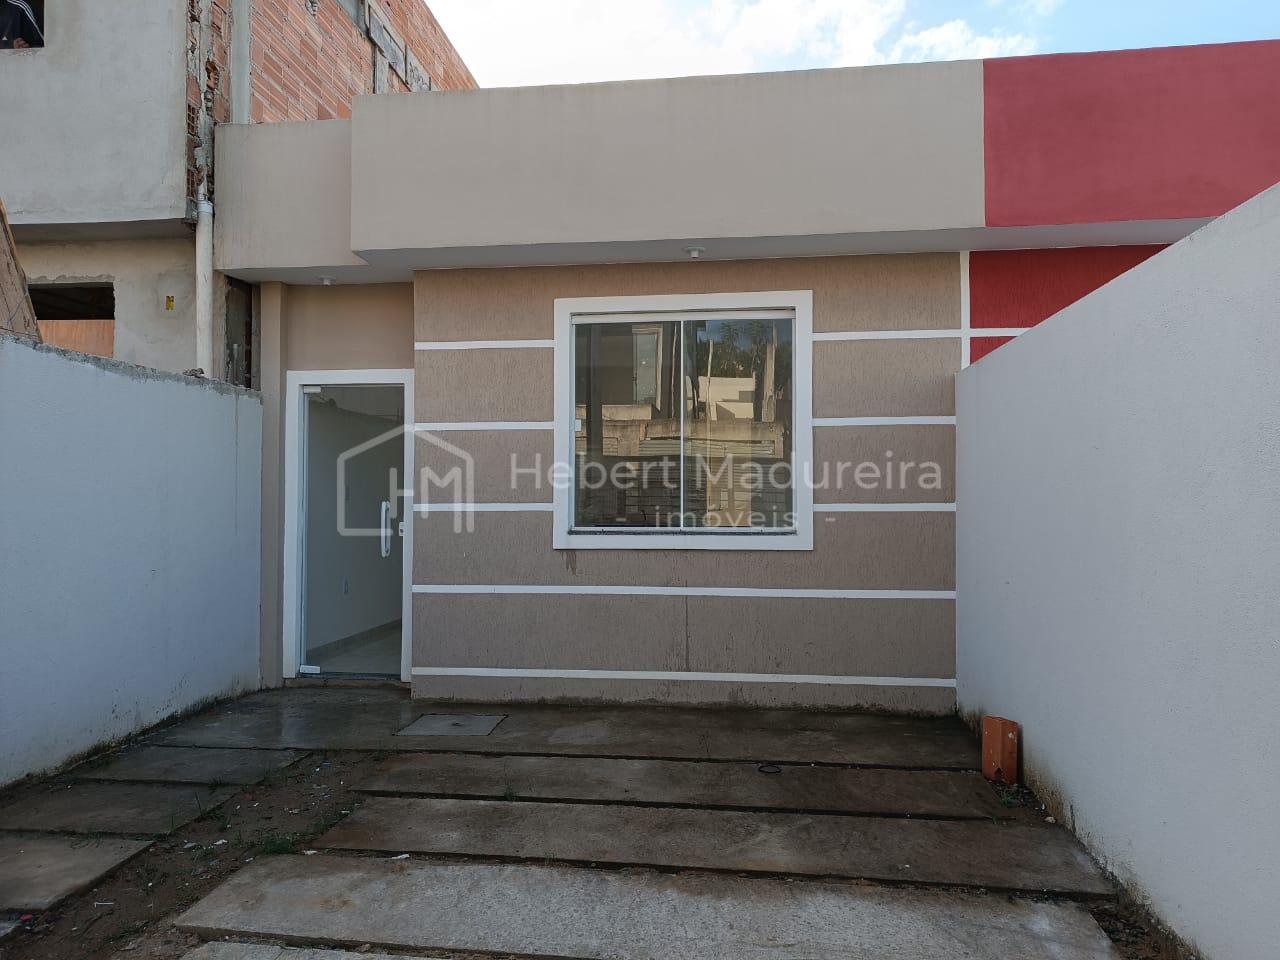 Casa nova, sem uso, a venda no Roma I em Volta Redonda RJ